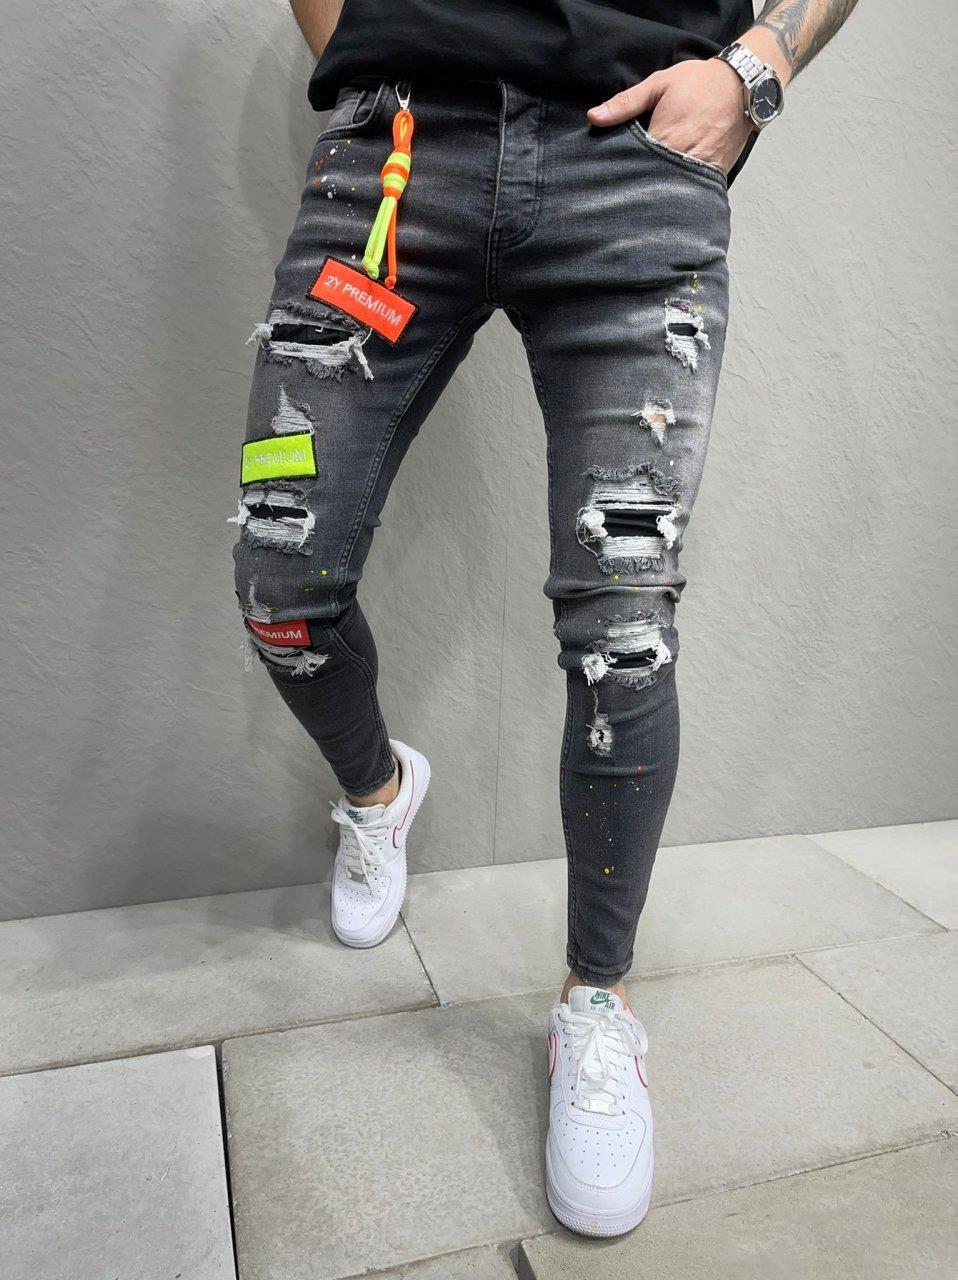 Premium Design Skinny Jeans